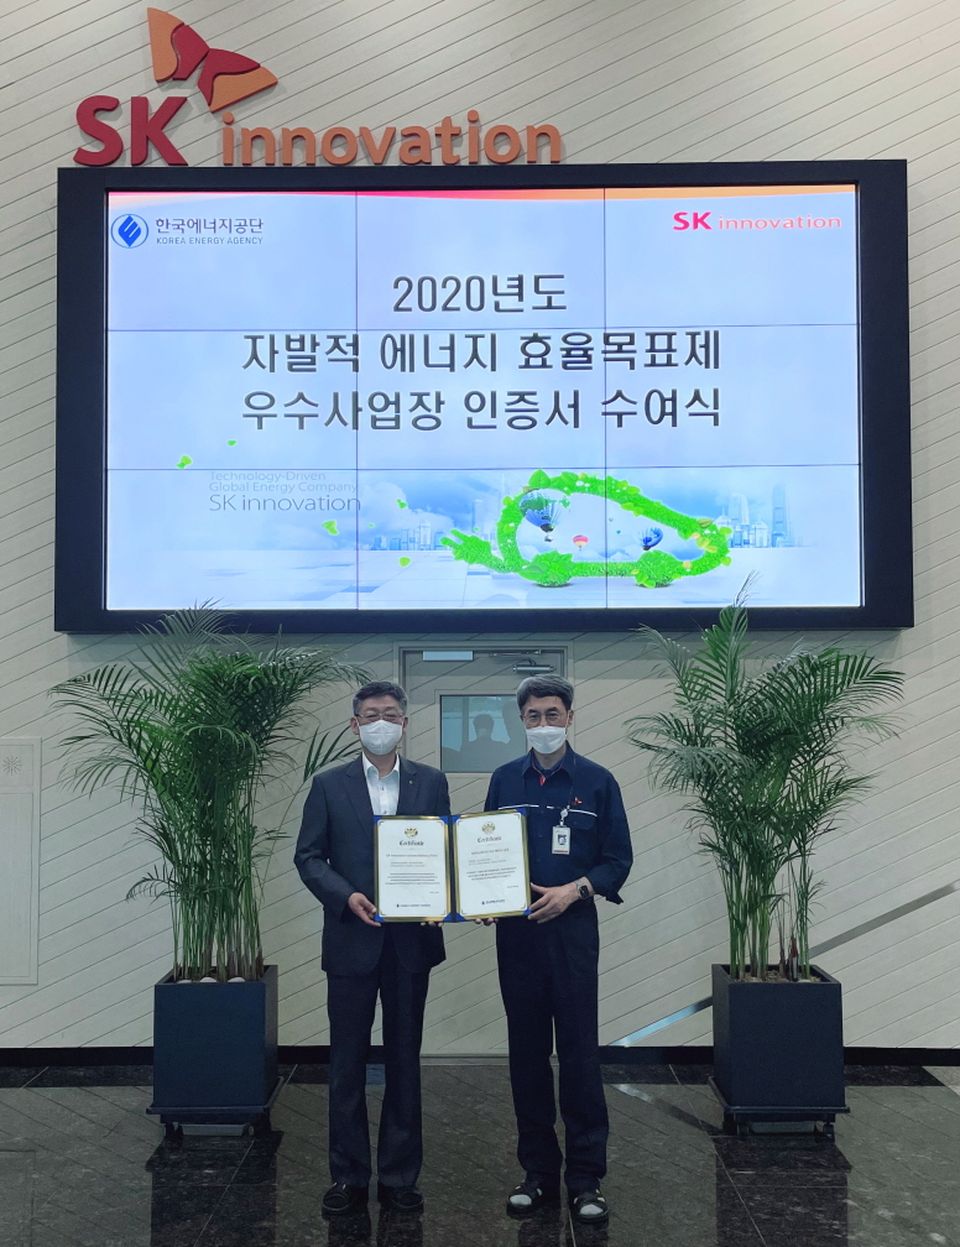 8월 12일 박병춘 한국에너지공단 수요관리이사(왼쪽)가 김진영 SK이노베이션 배터리생산기술본부장(우측)에게 2020년도 자발적 에너지효율목표제 우수사업장 인증서 및 현판을 전달하고 있다.